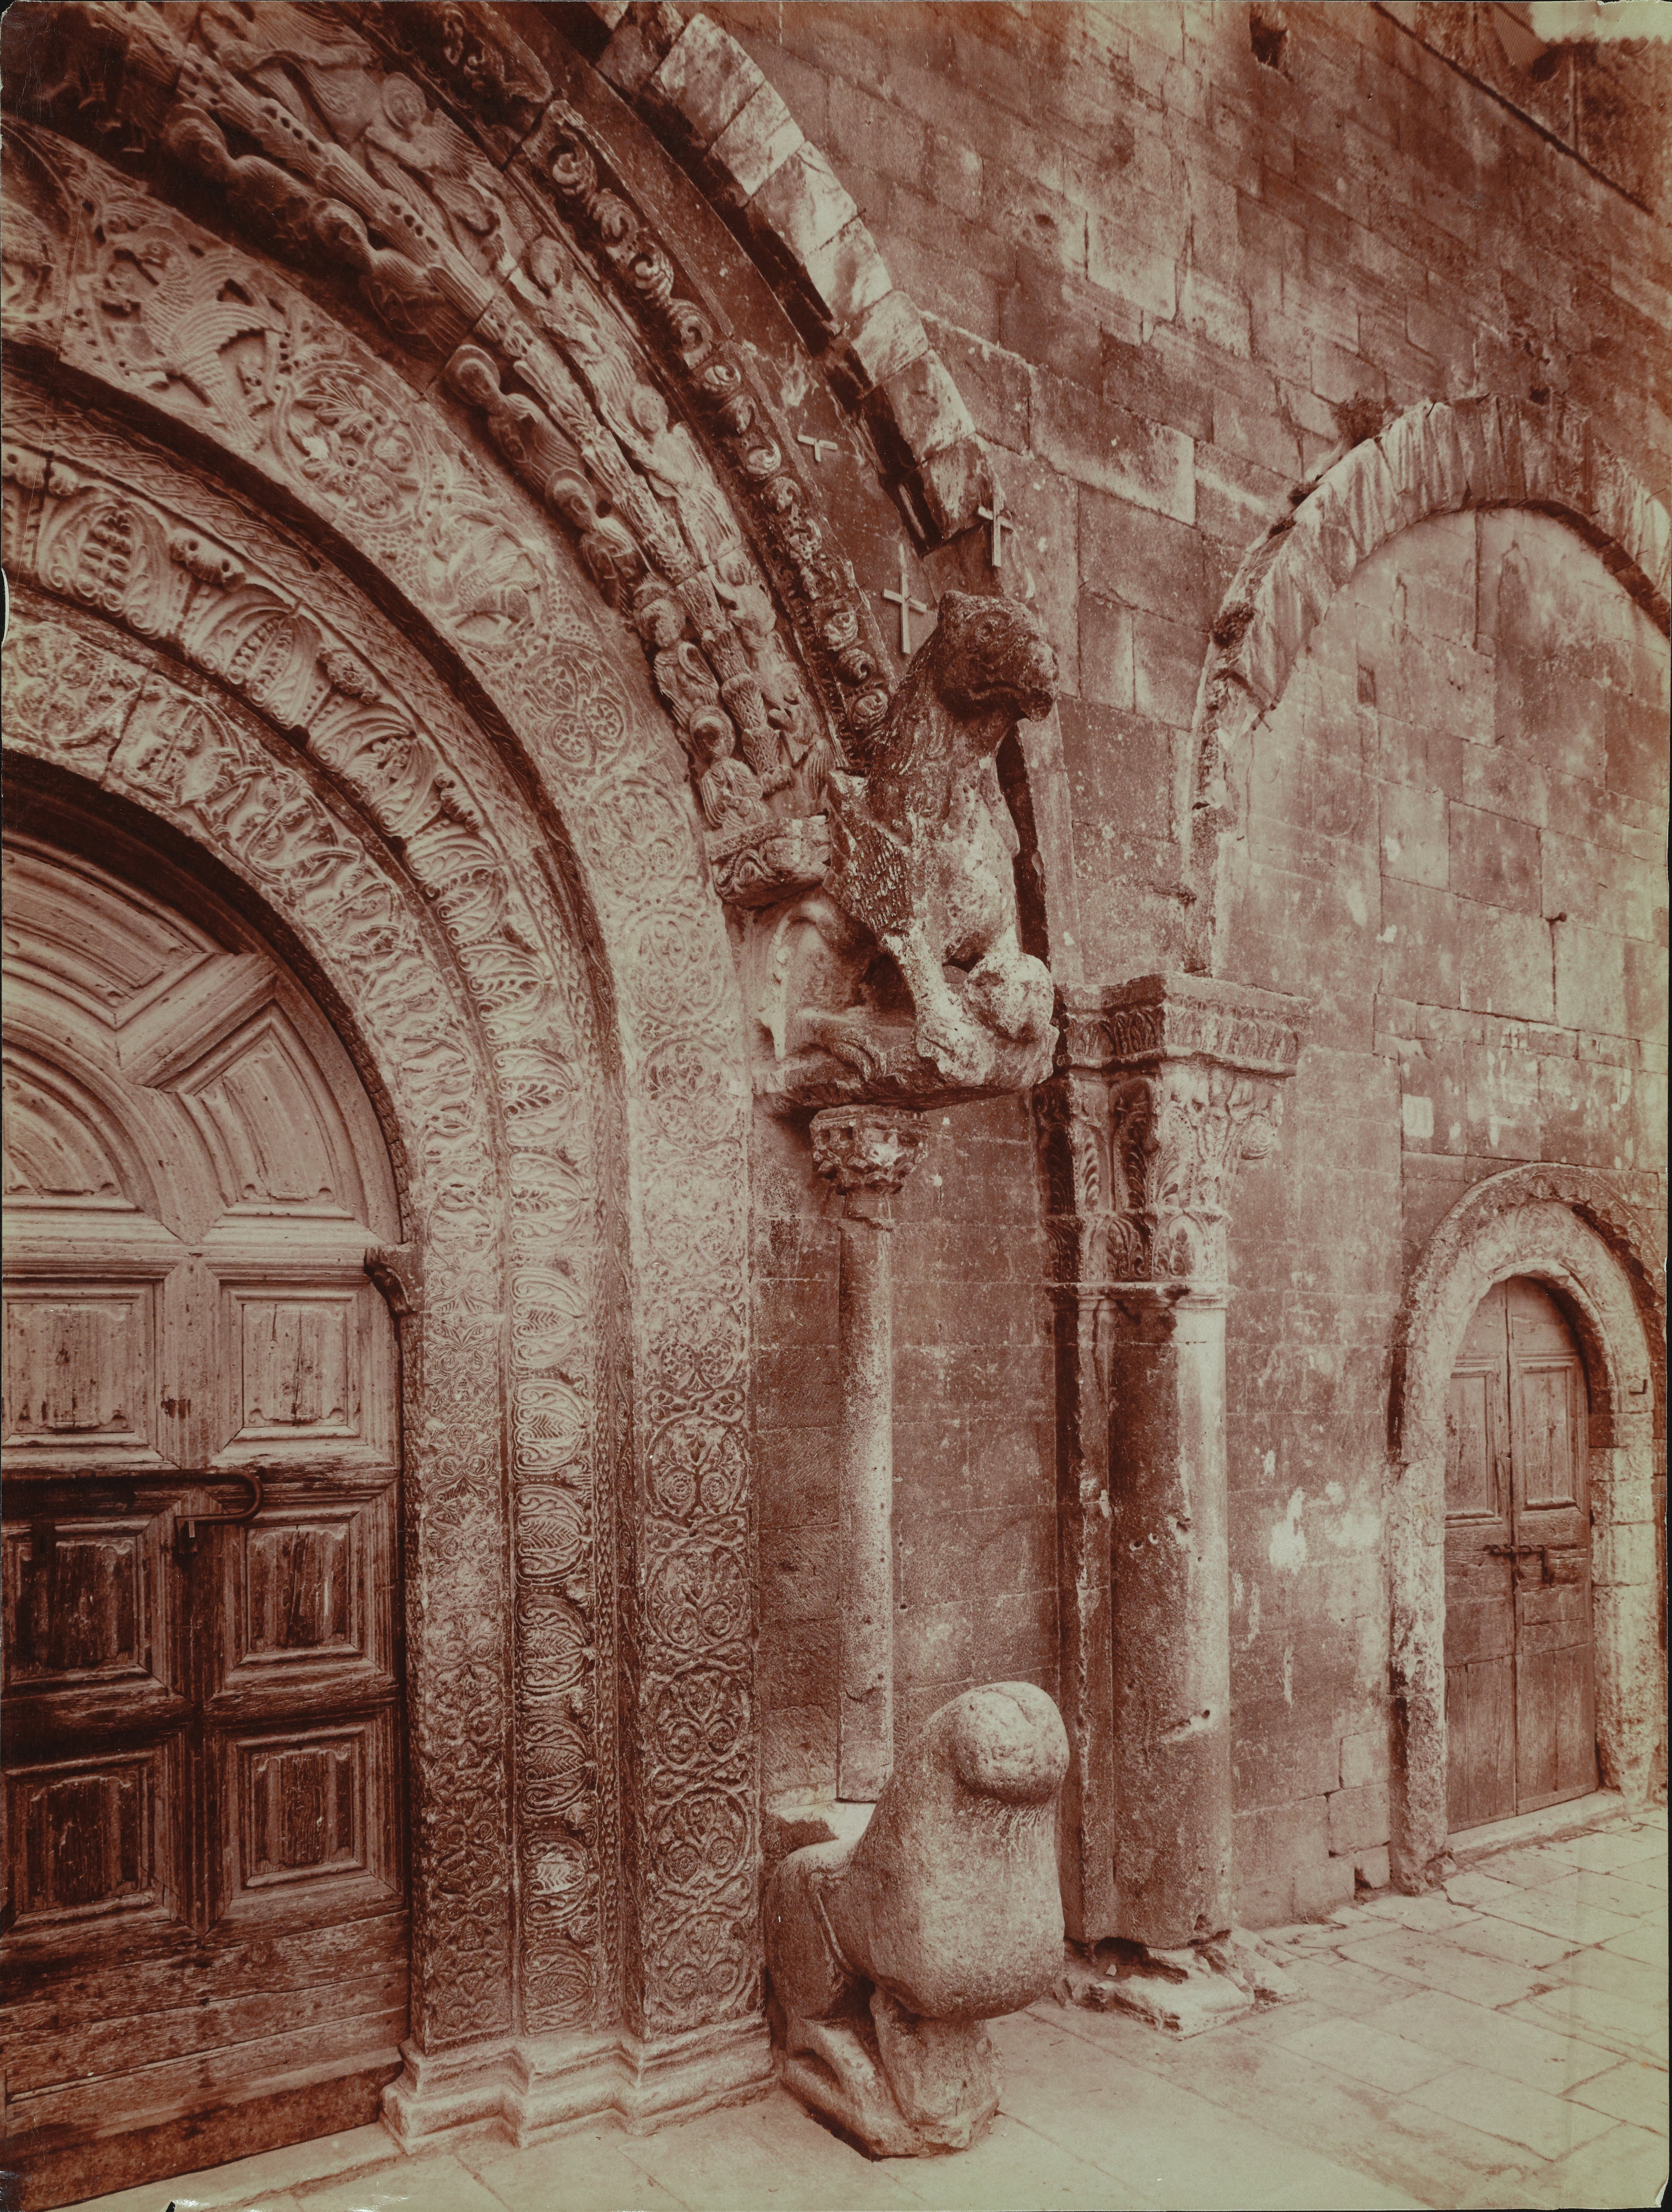 Fotografo non identificato, Ruvo di Puglia - Cattedrale S. Maria Assunta, portale, particolare, 1901-1910,  albumina, MPI6091654